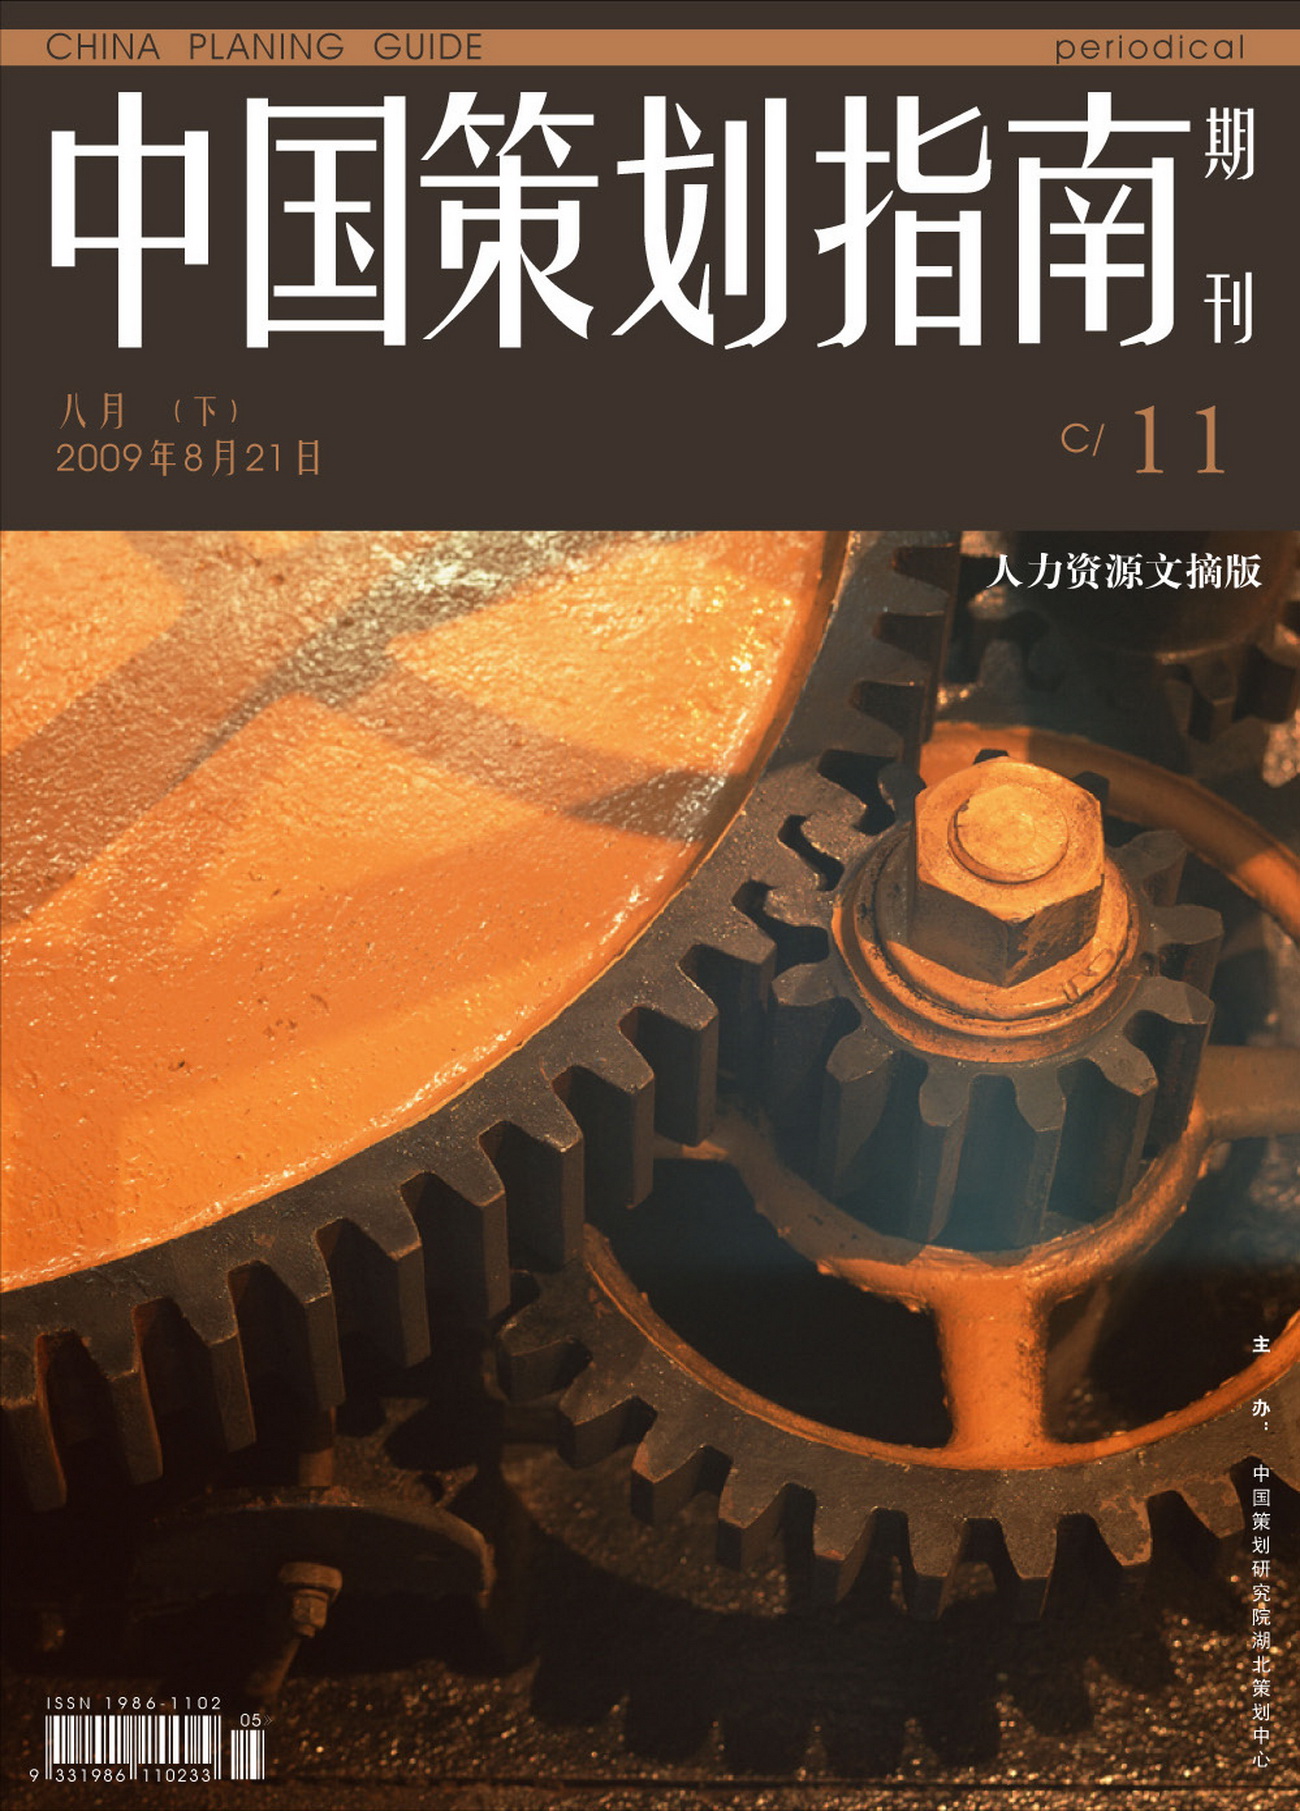 《中国策划指南》09年第11期电子刊